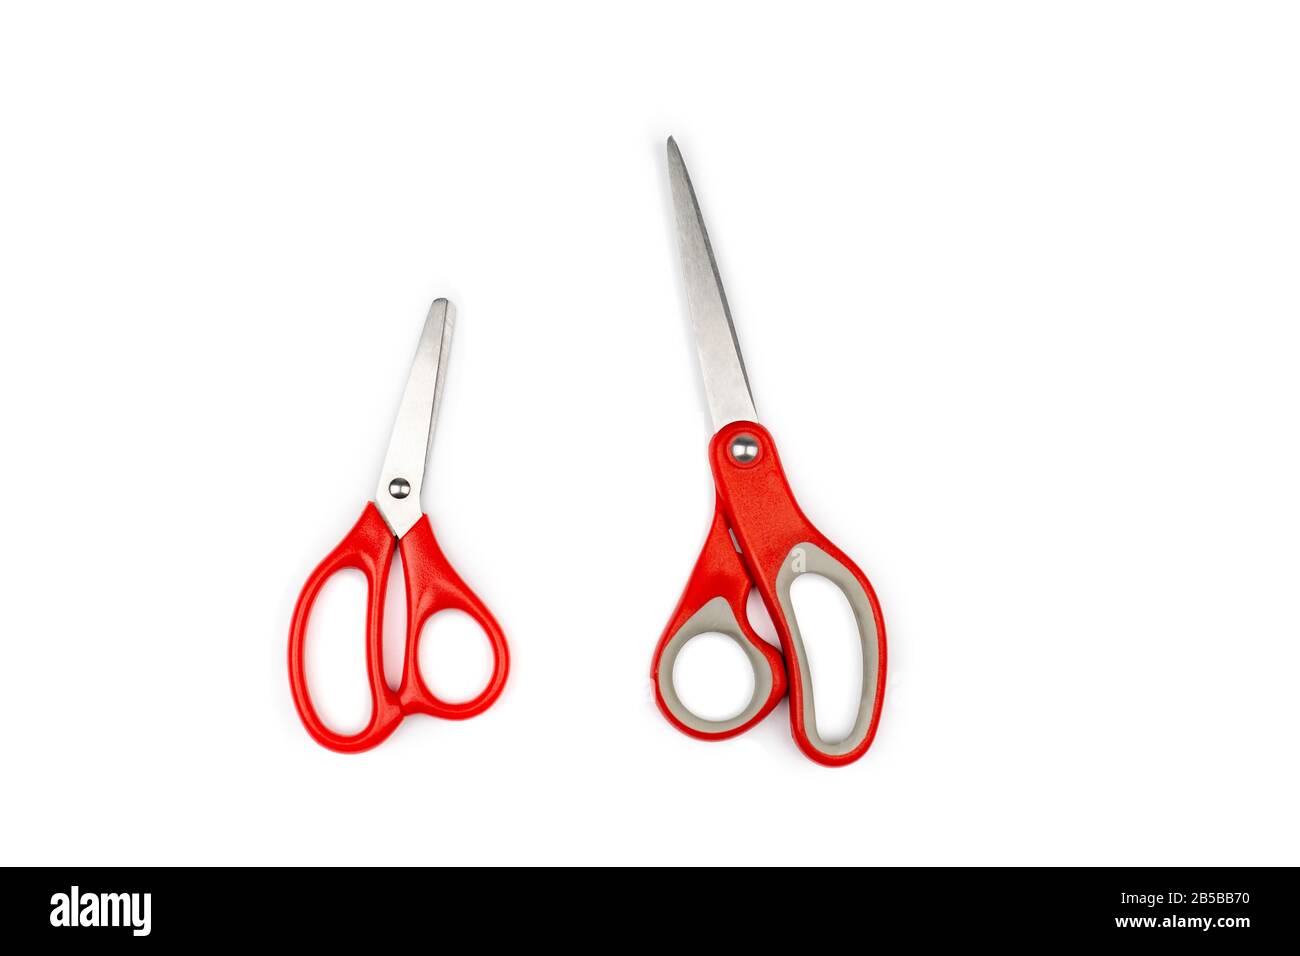 due forbici rosse, una grande, una piccola sono isolate su sfondo bianco.  Tracciati di ritaglio Foto stock - Alamy